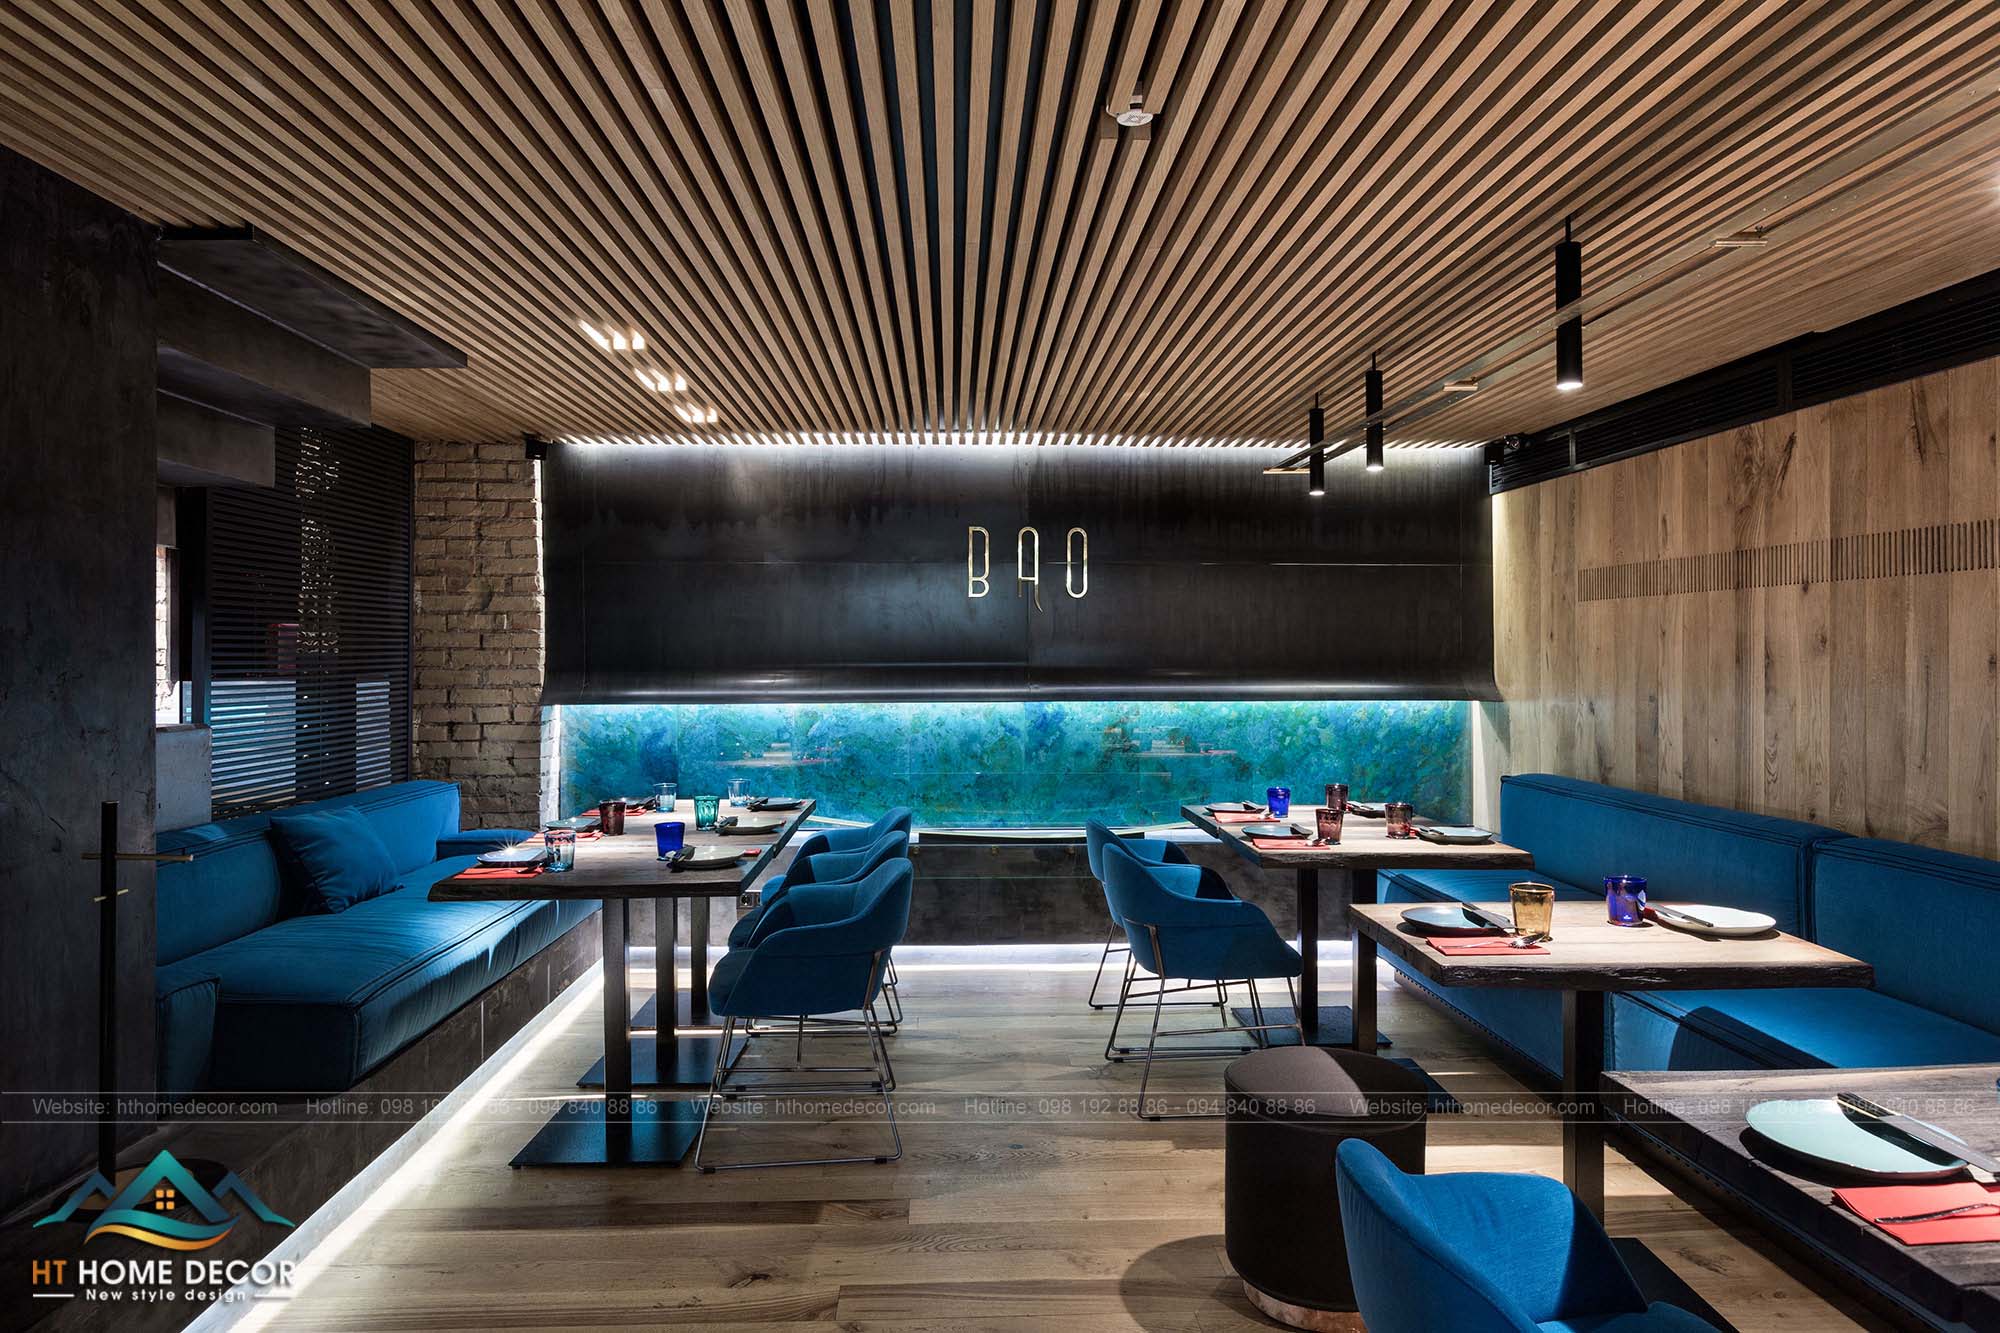 Với những tấm gỗ liền kề trong gian phòng, nhà hàng sành điệu còn sử dụng gam màu xanh tươi mát cho bộ sofa. Tạo không gian nhà hàng như ở trong một đại dương.